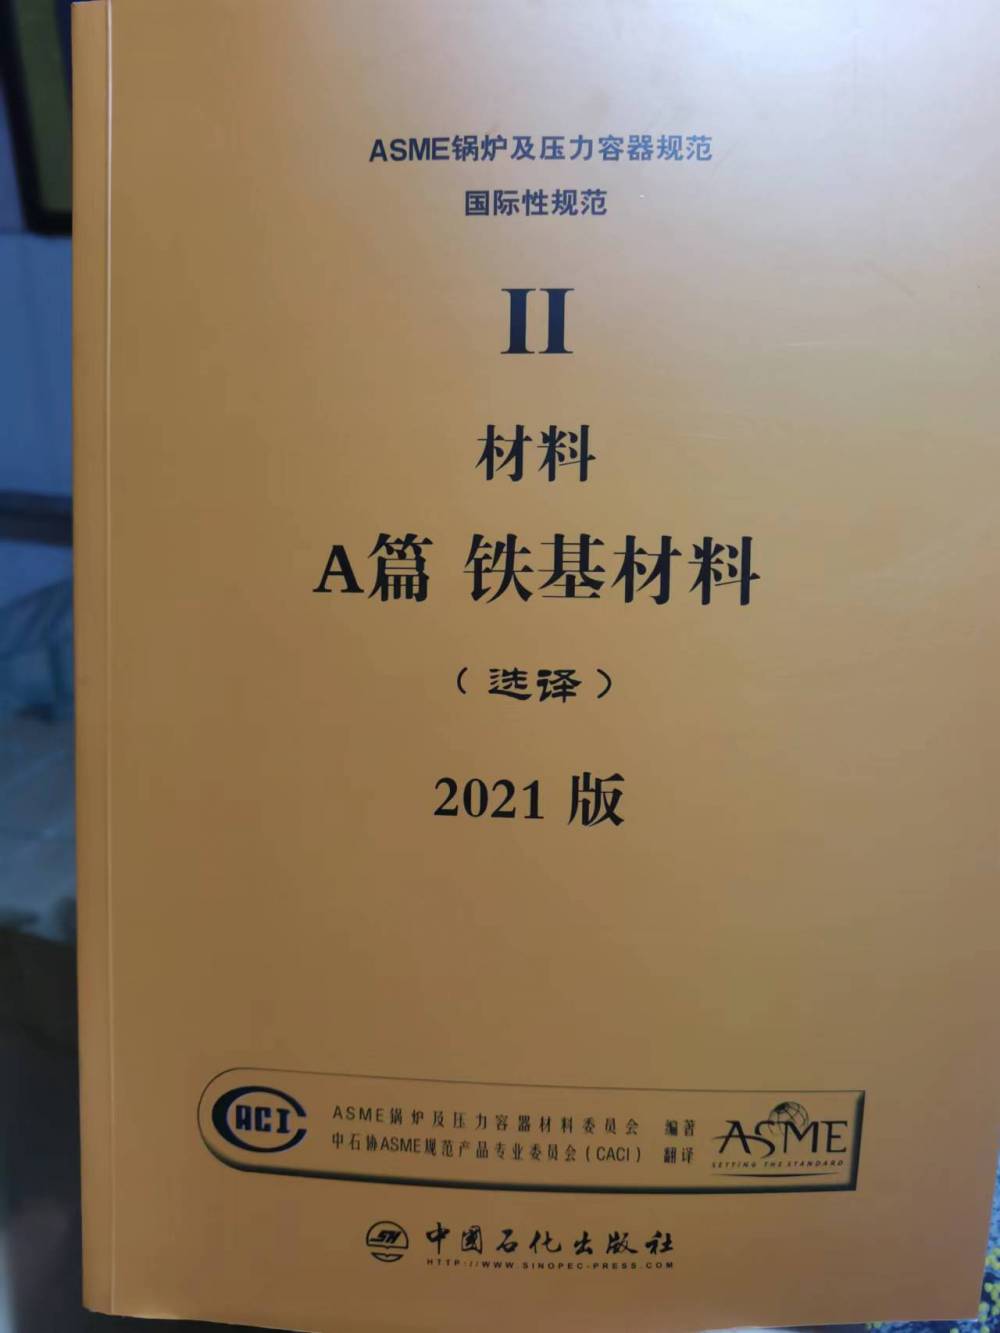 2021新版ASME规范BPVC锅炉及压力容器规范Ⅱ卷A篇铁基材料-石化出版社